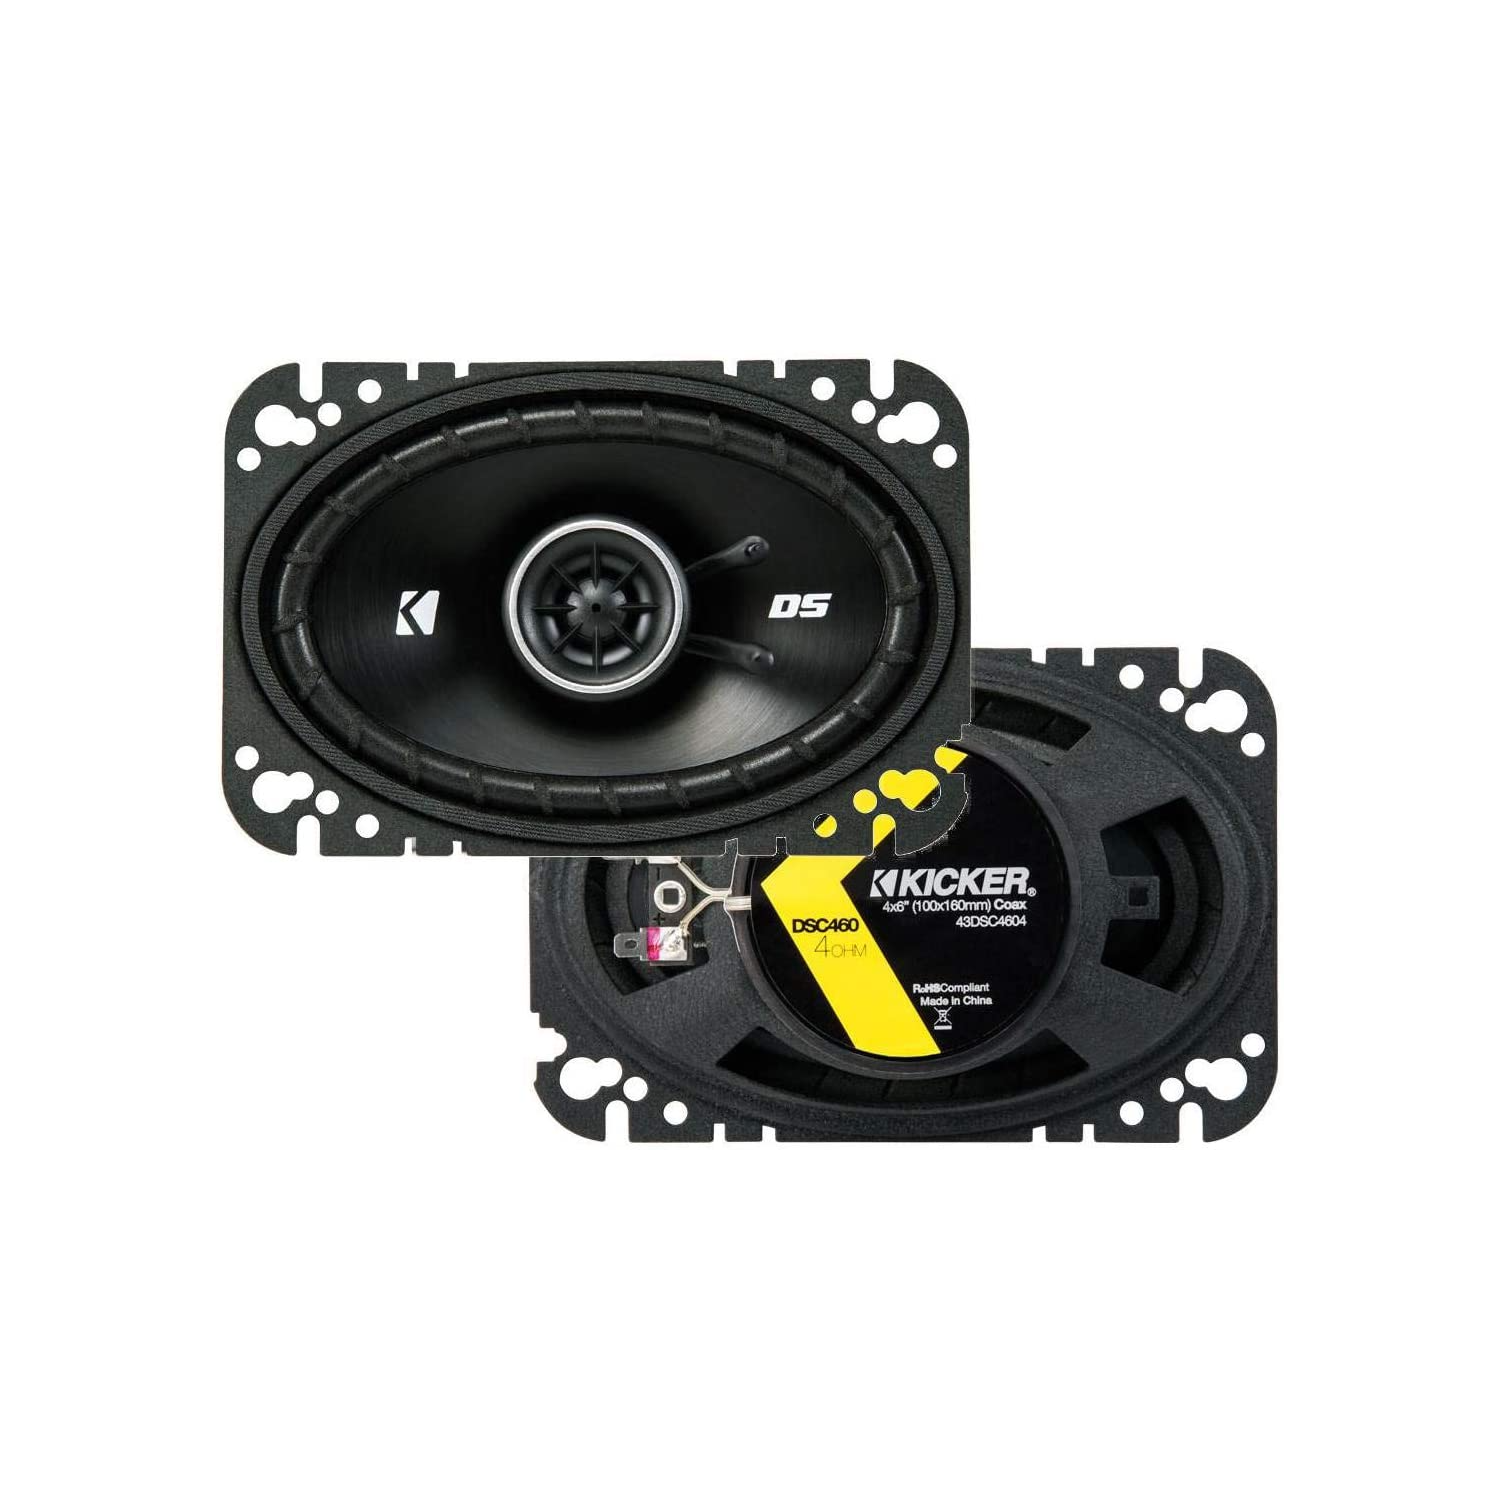 Kicker 43DSC460 DS Series 4x6" 4-Ohm Coaxial Speaker